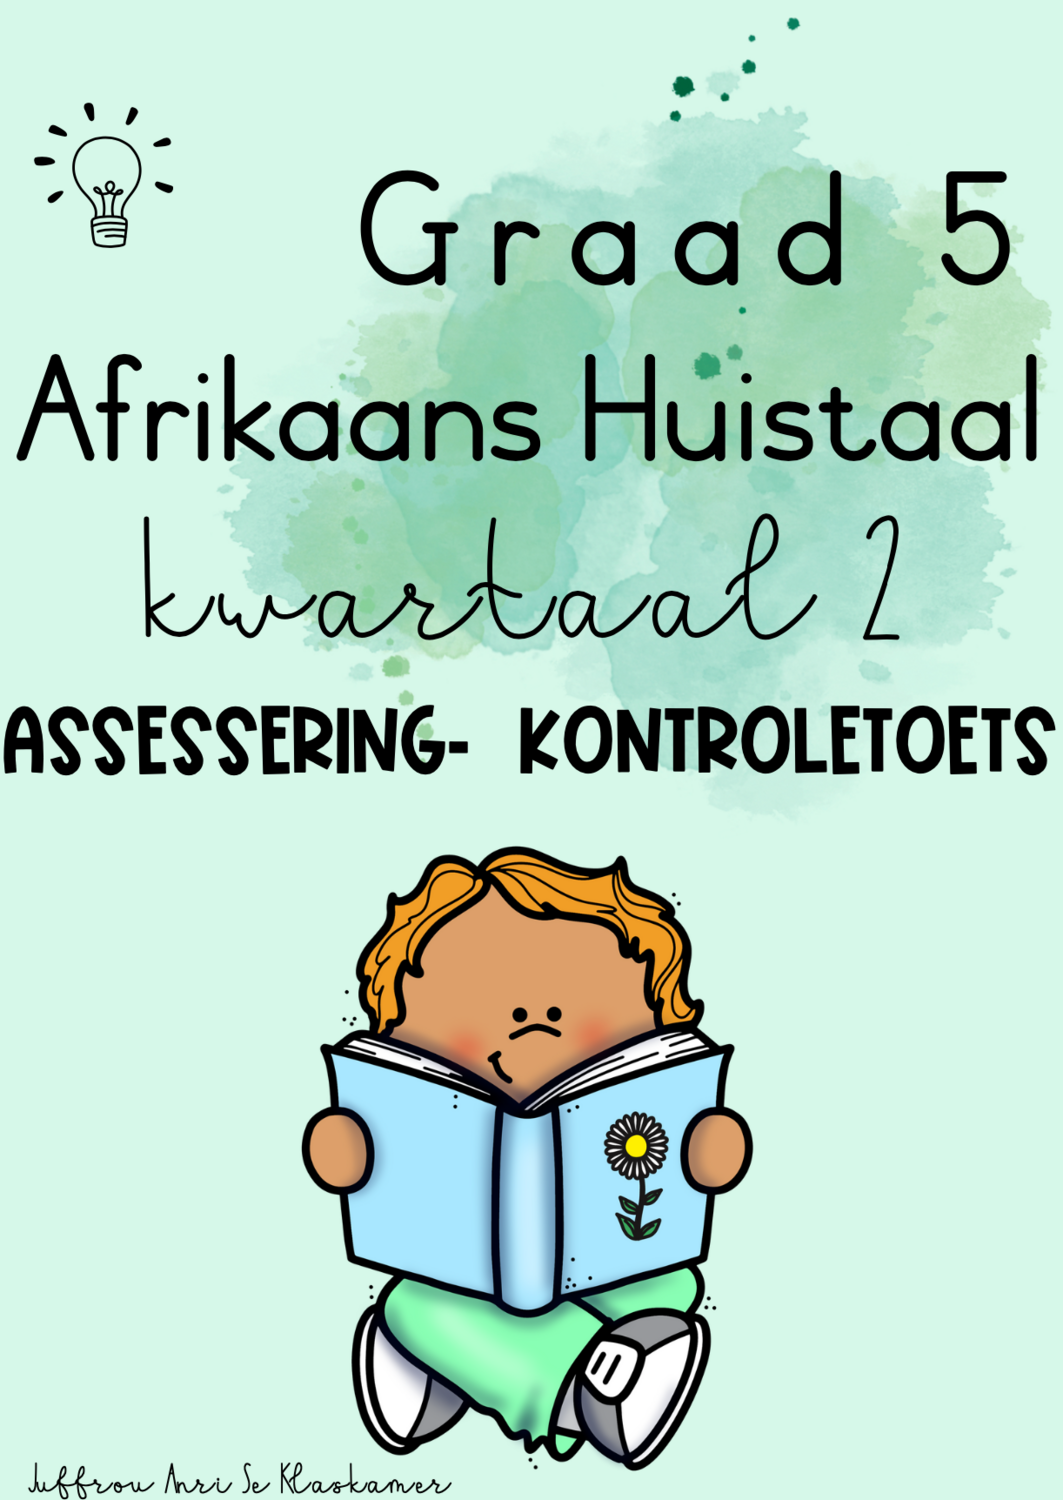 Graad 5 Afrikaans Huistaal kwartaal 2 assessering - kontroletoets (2023/2024)